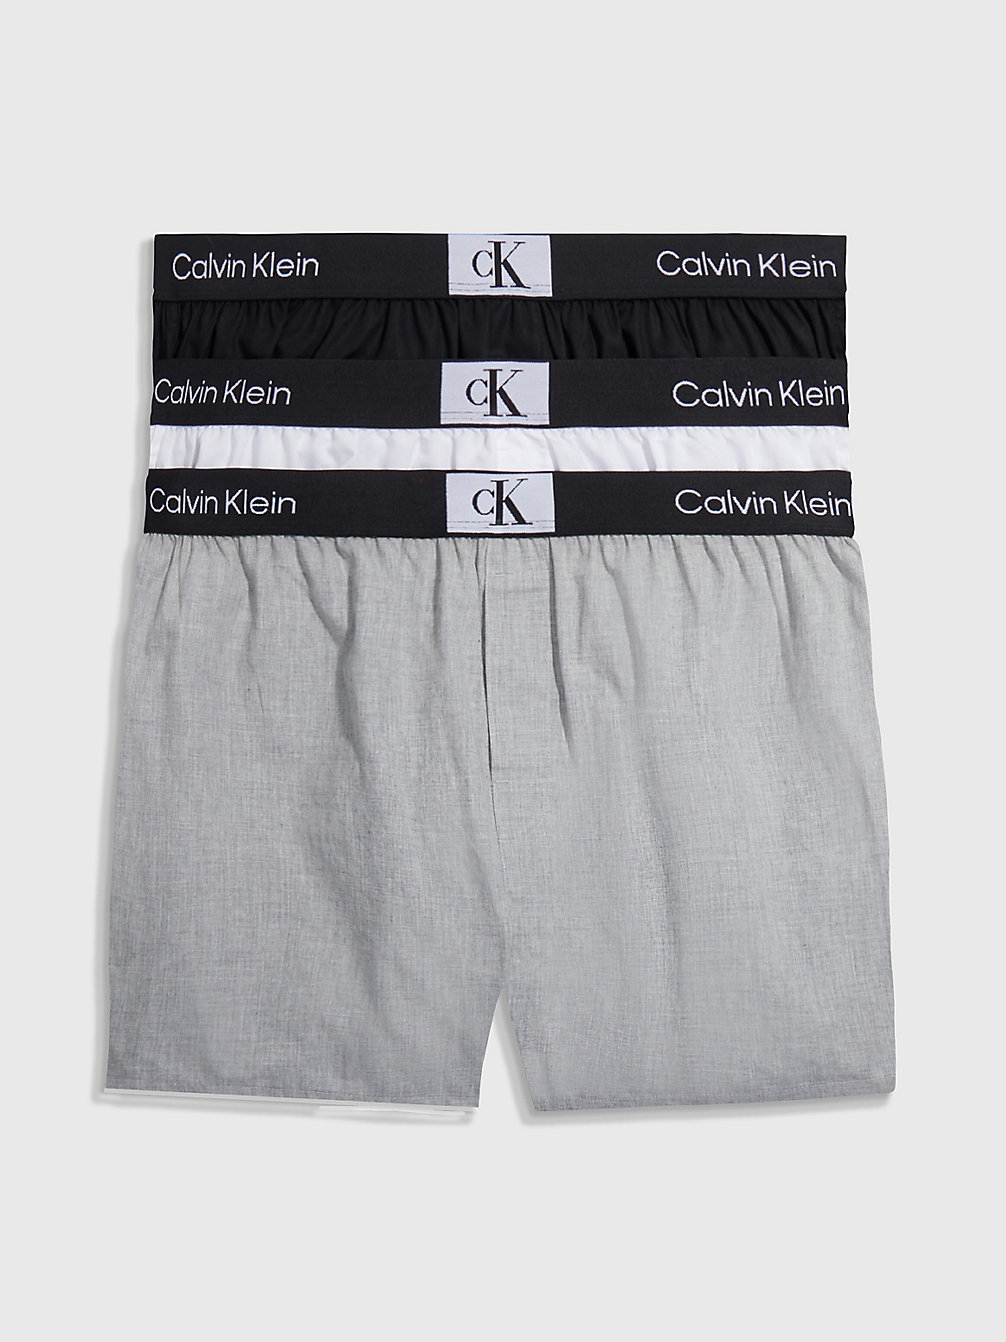 BLACK/WHITE/GREY HEATHER > 3 Pack Slim Fit Boxers - Ck96 > undefined женщины - Calvin Klein